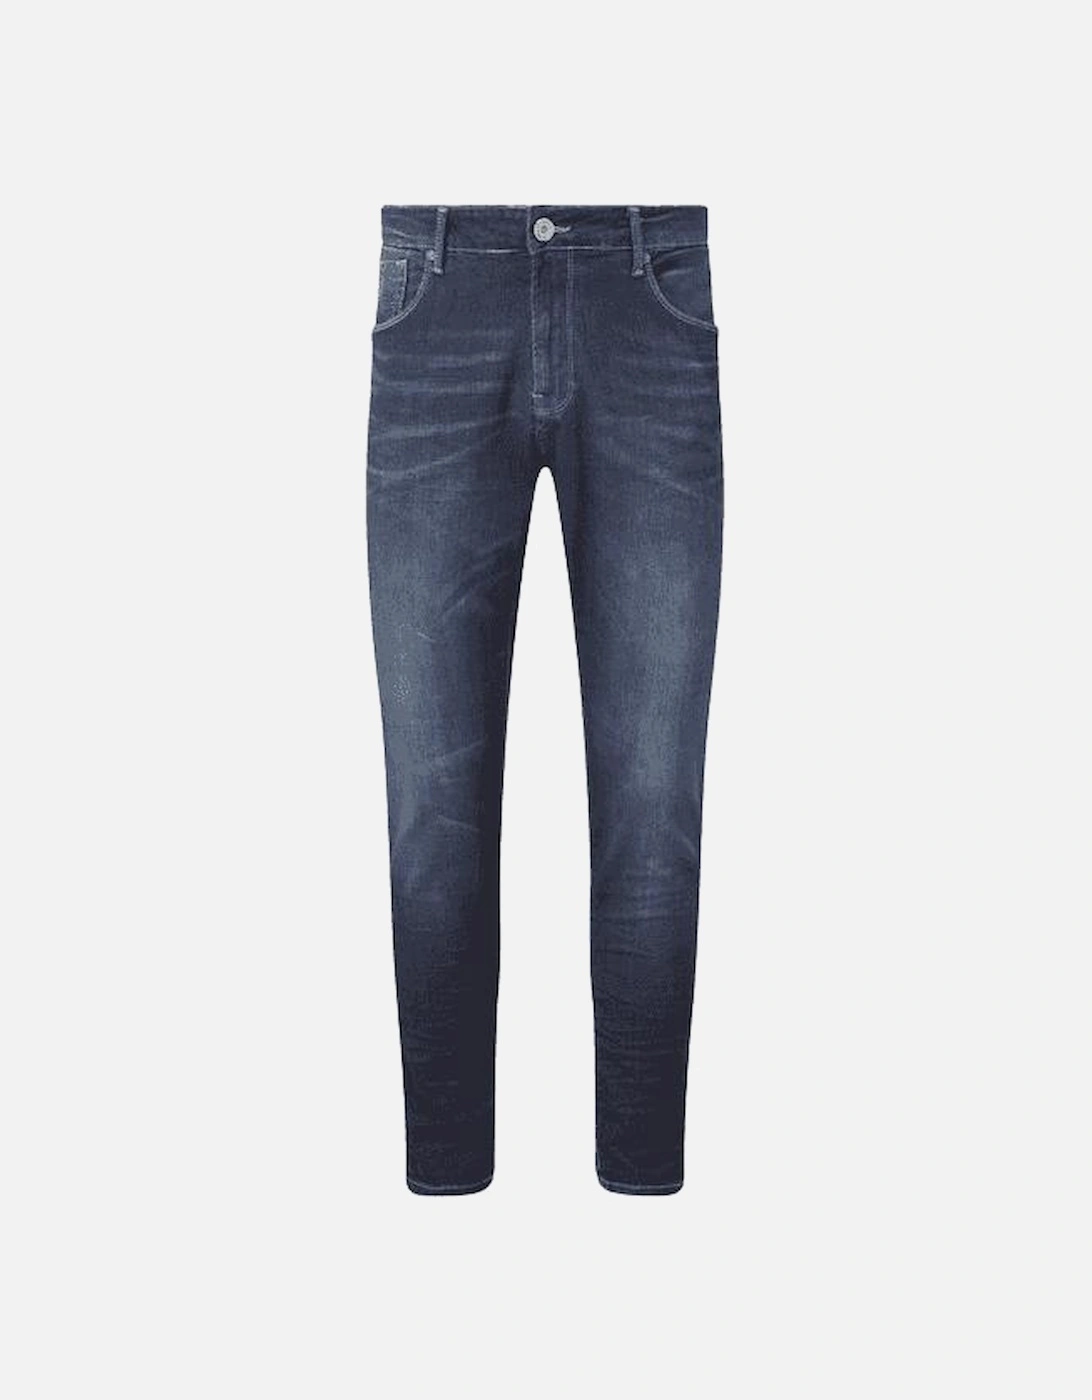 LAK 517 Slim Fit Dark Blue Jeans, 5 of 4